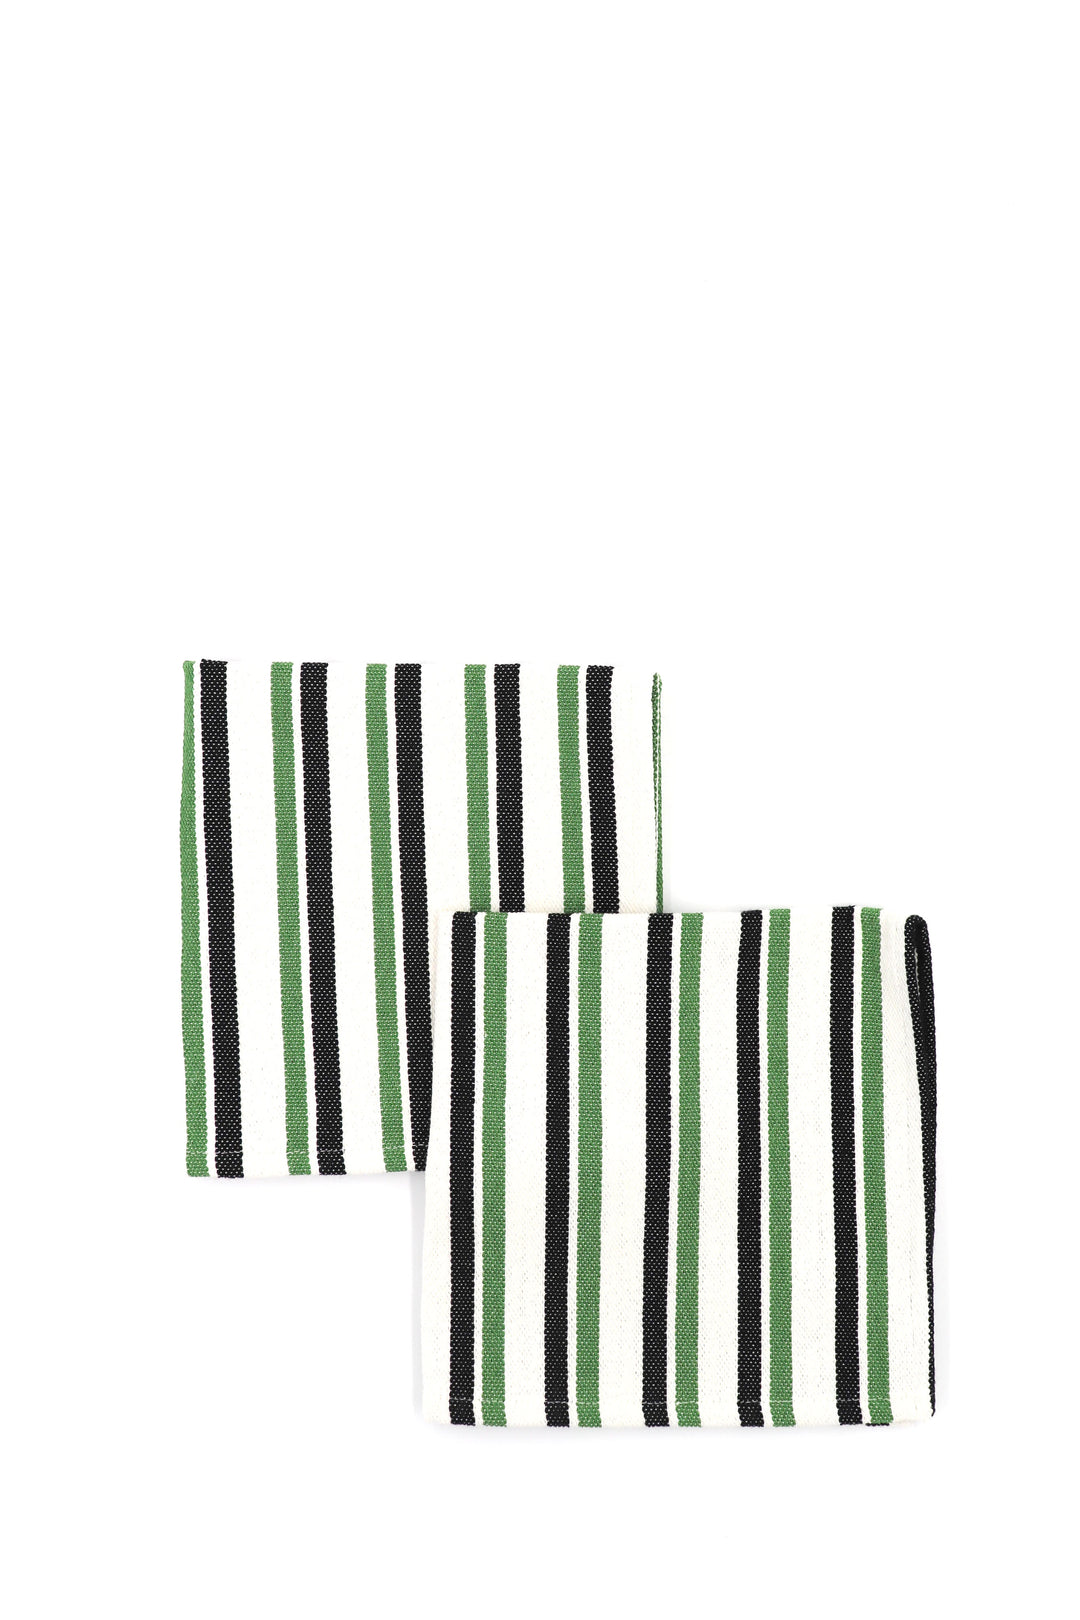 Servilleta tejido canario negro y verde 2unid.